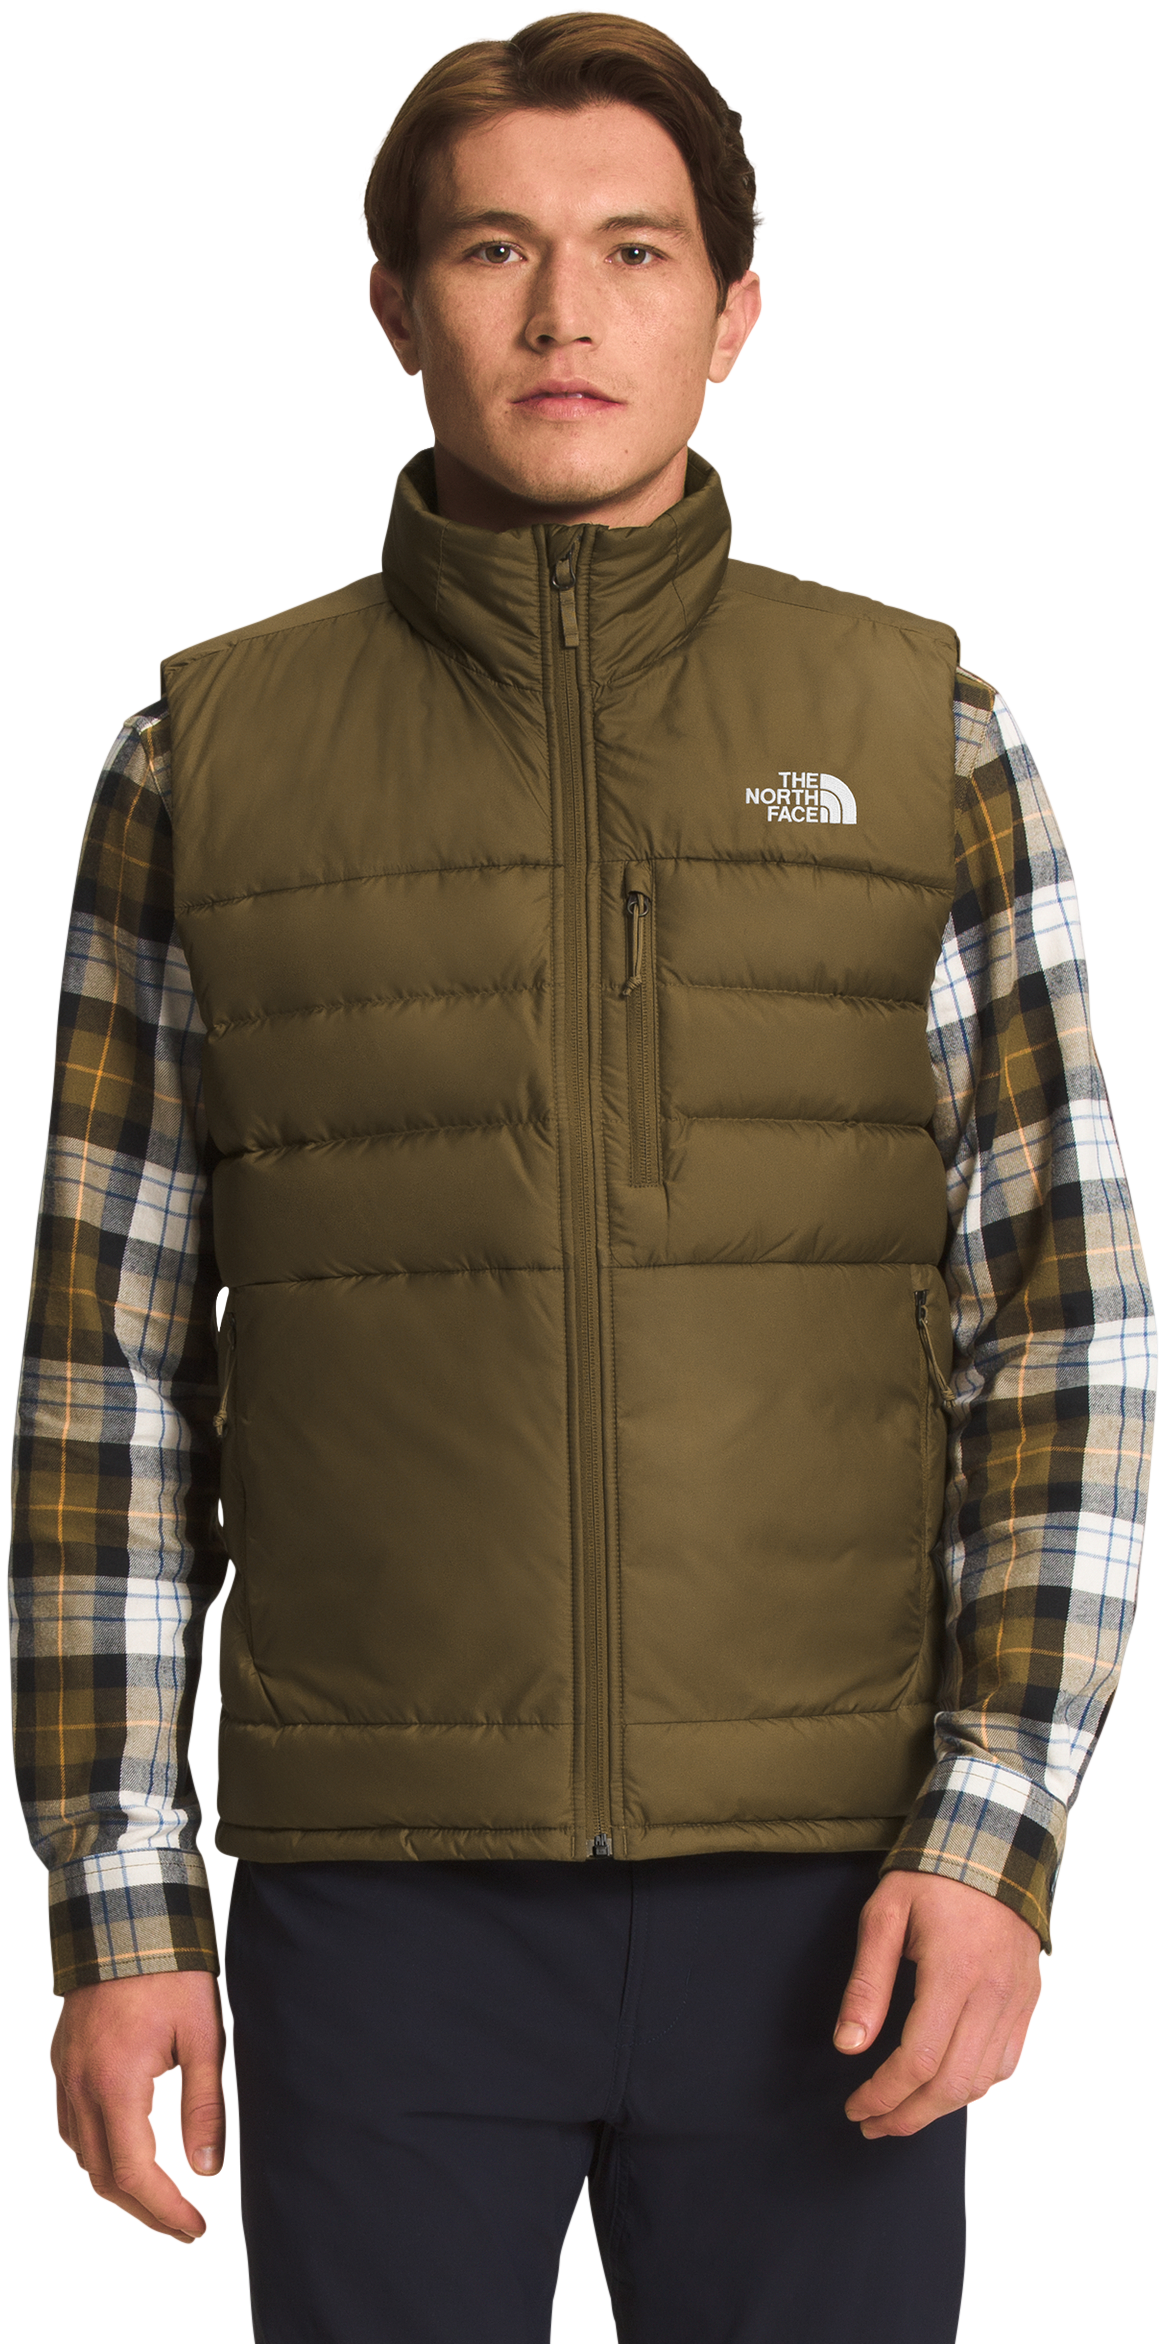 The North Face Aconcagua 2 Vest for Men